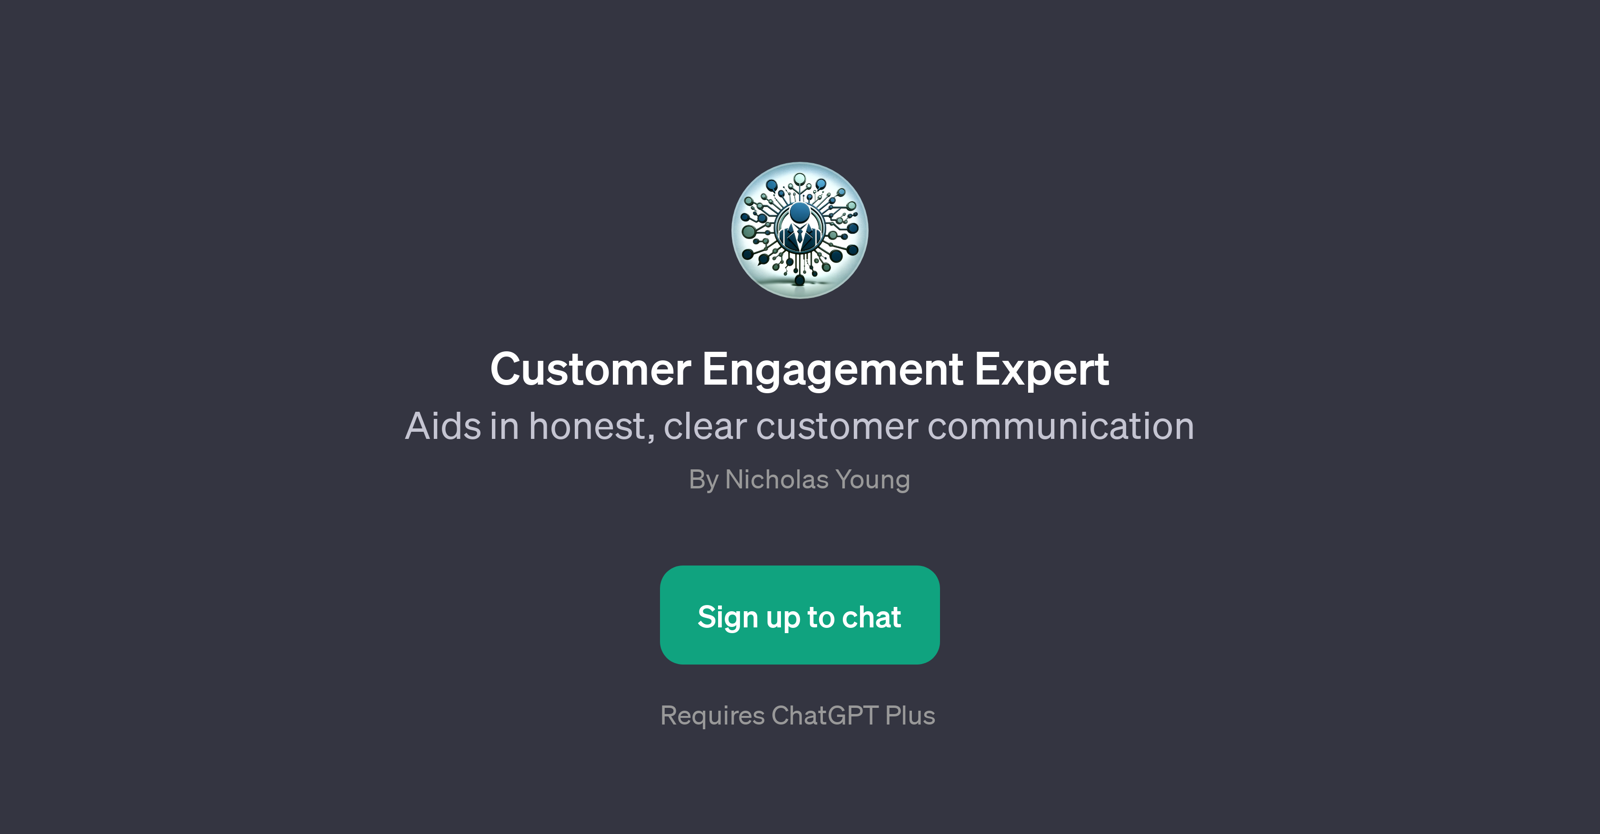 Customer Engagement Expert website